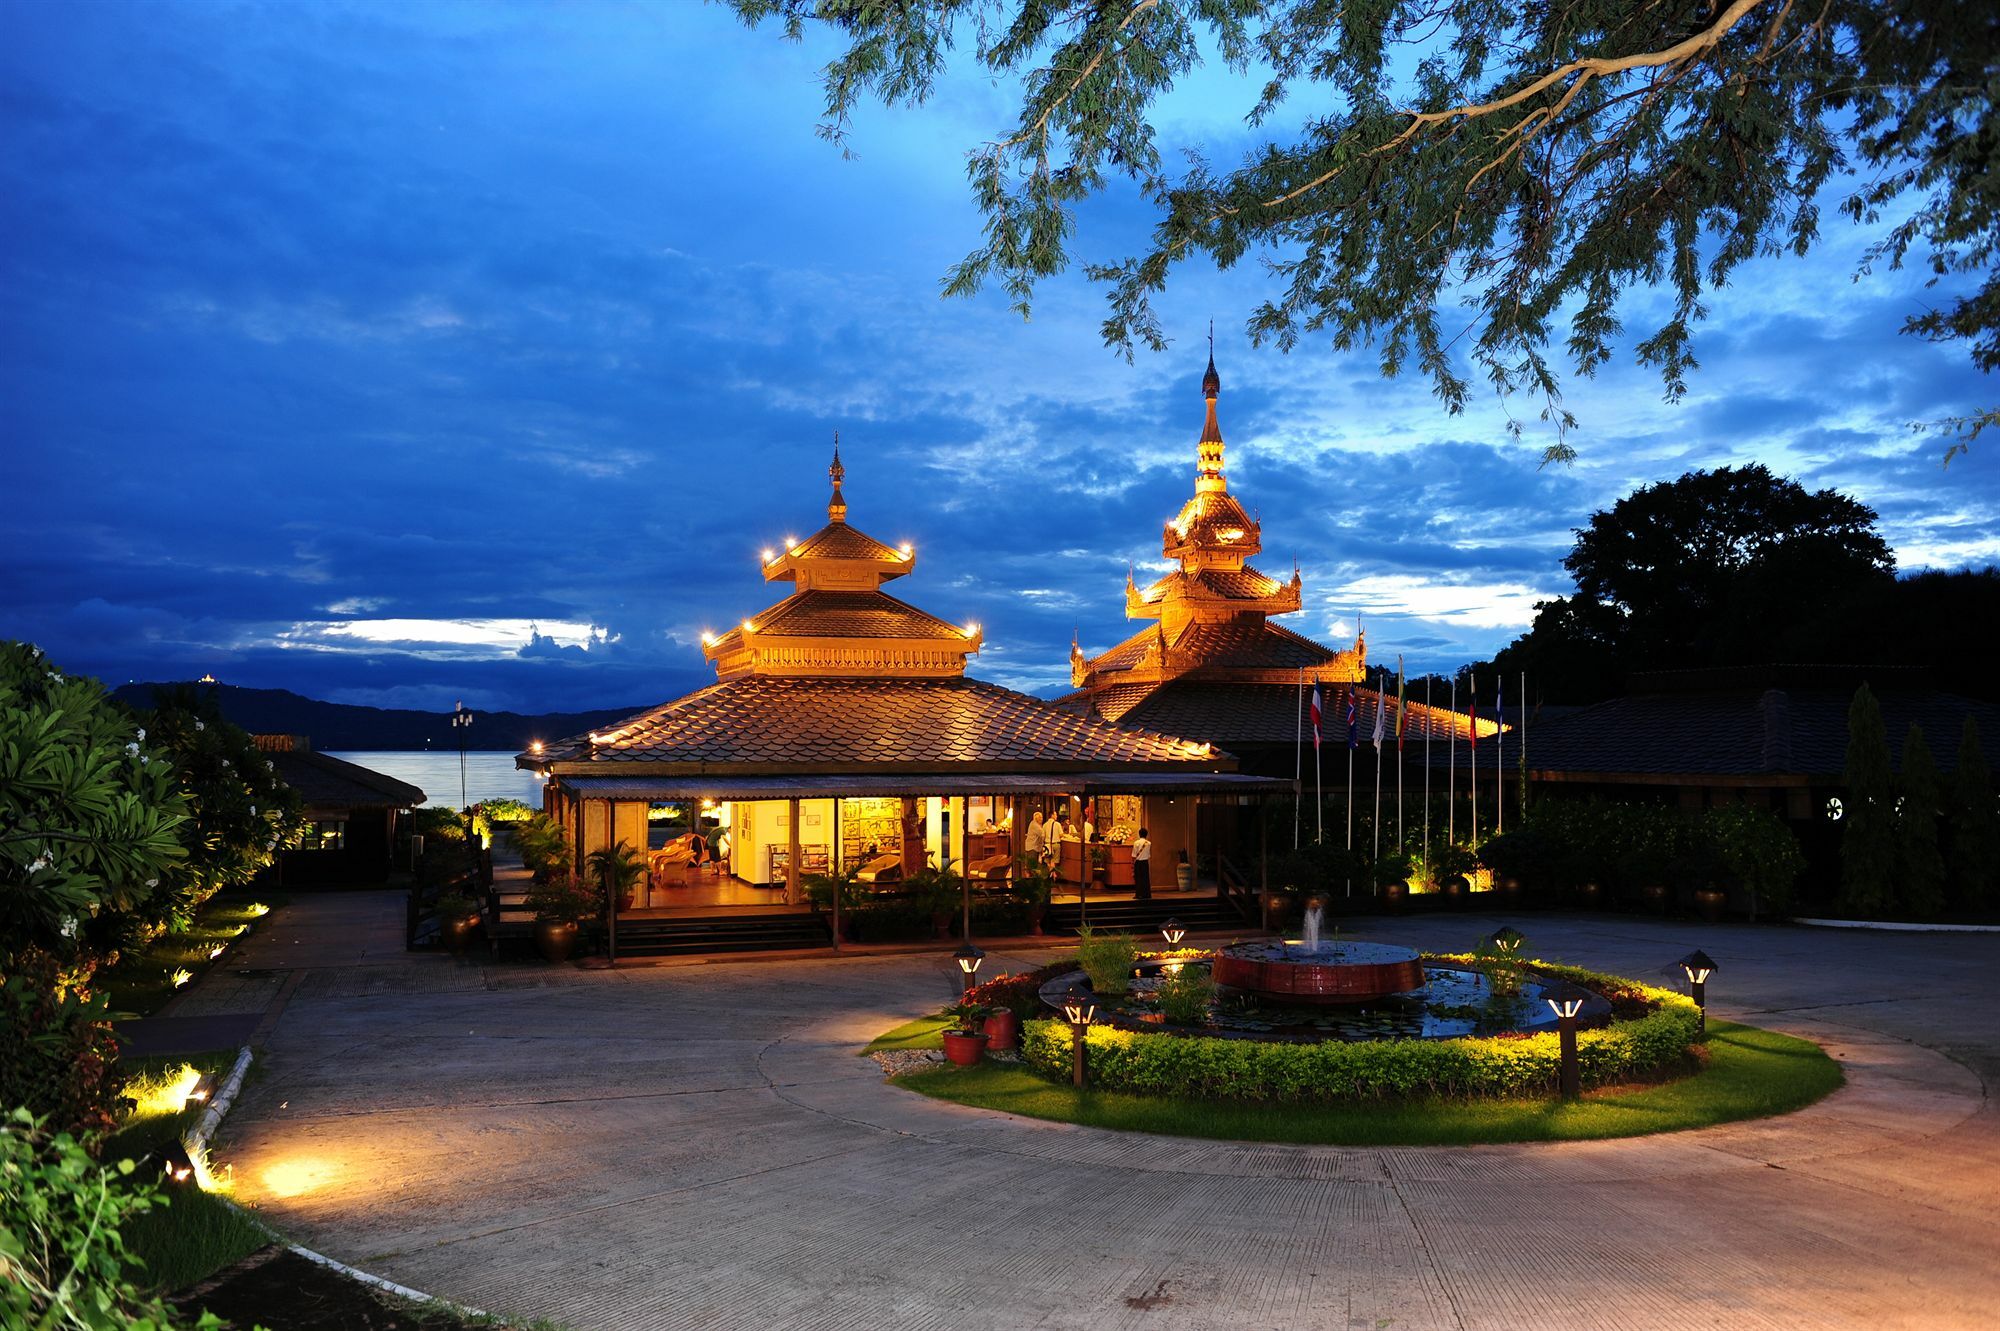 Bagan Thiripyitsaya Sanctuary Resort Esterno foto